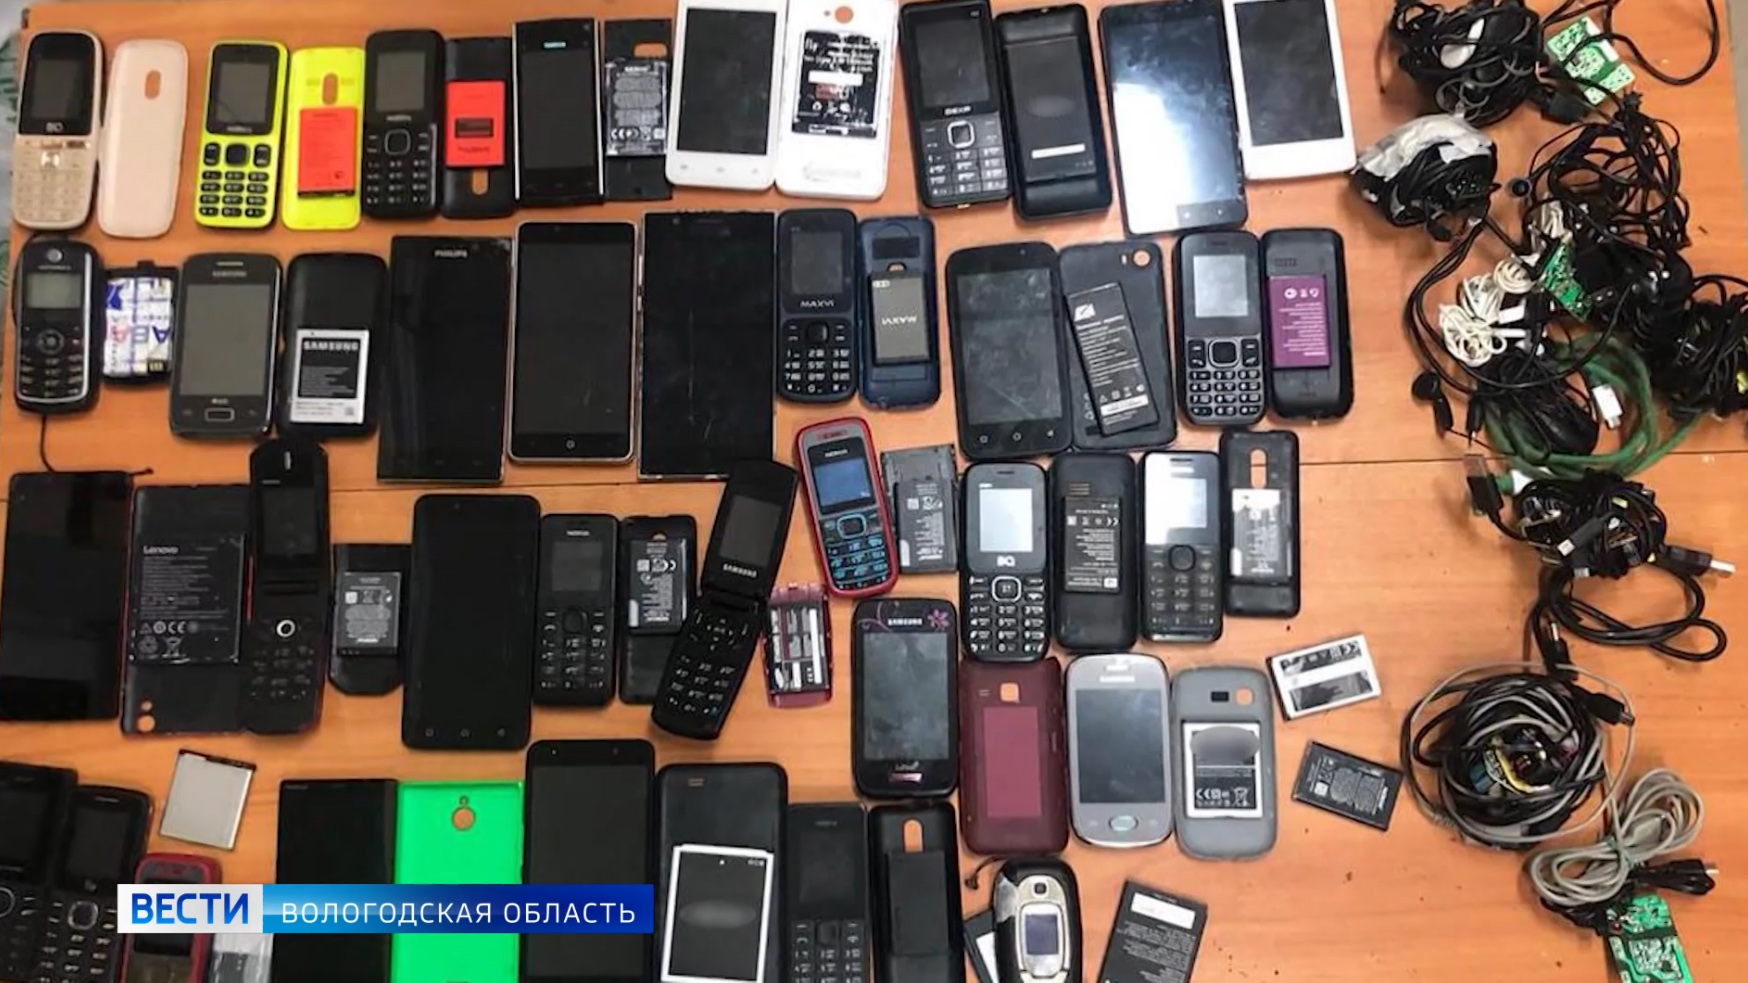 Телефоны в вологде цены. Тюрьма в Шексне Вологодская область. ИК 12 Вологодская область. Конфискованные мобильные телефоны. Телефон в тюрьме.